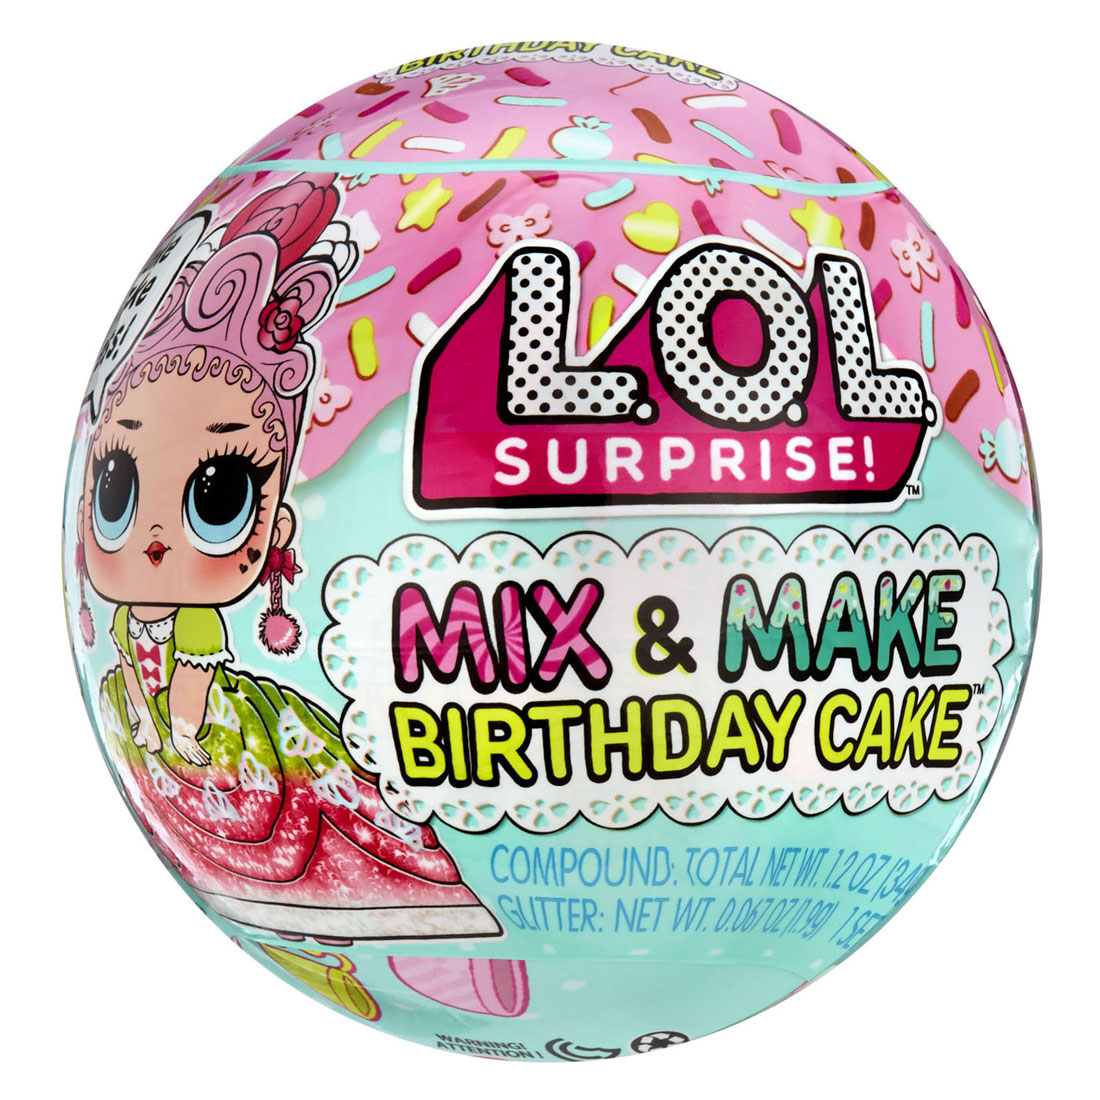 LOL. Surprise Mix & Make Geburtstags-Mini-Popball